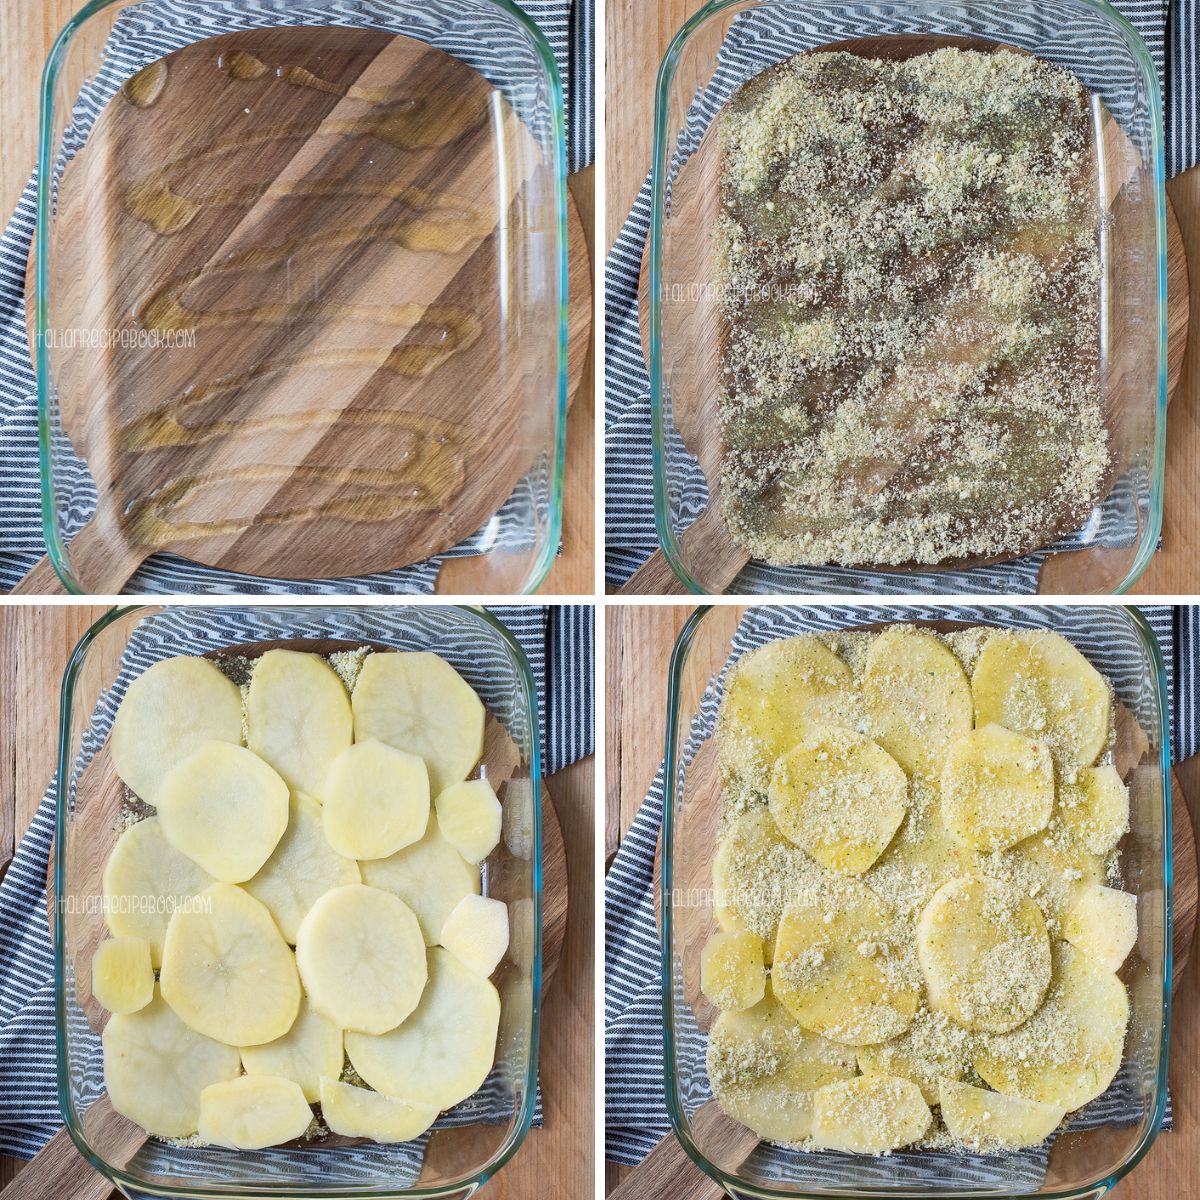 assembling artichoke and potato casserole